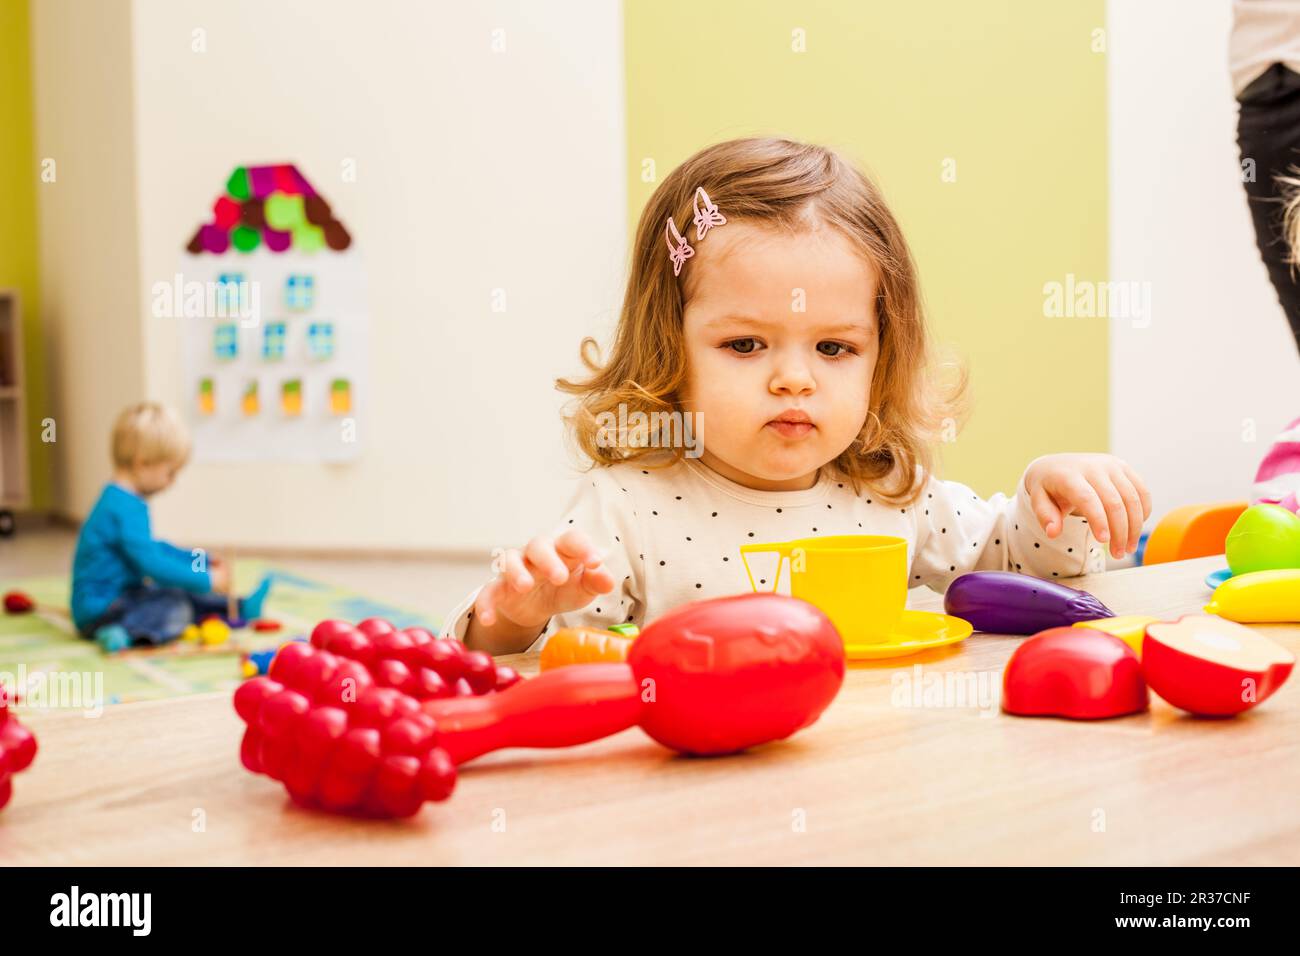 La ragazza gioca con frutta Foto Stock